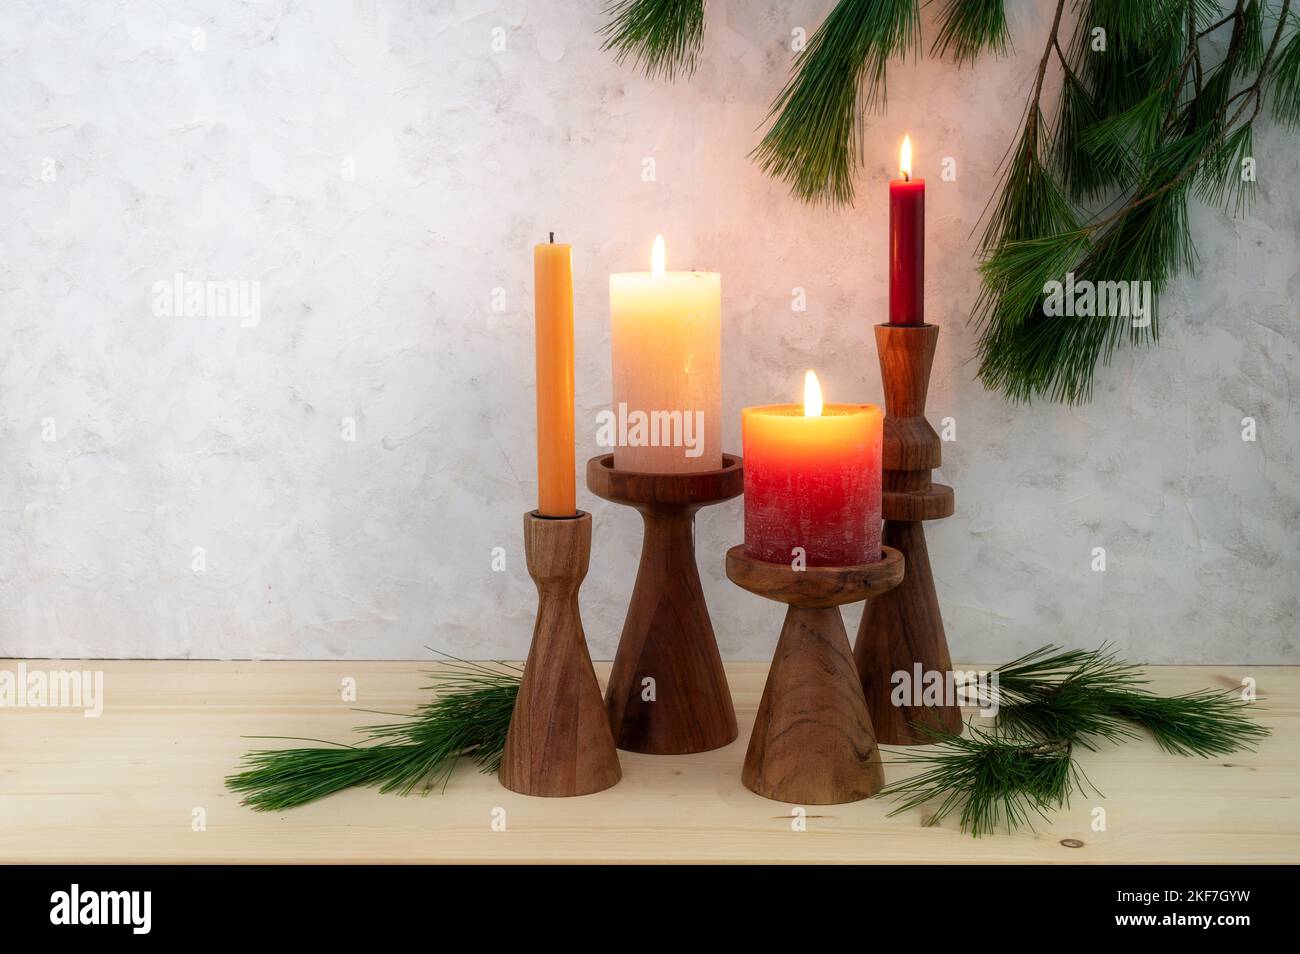 Quattro candele su stand di legno, tre sono accese per il terzo Avvento, decorazione di rami di pino, legno chiaro tavola e sfondo rustico in gesso, spac copia Foto Stock